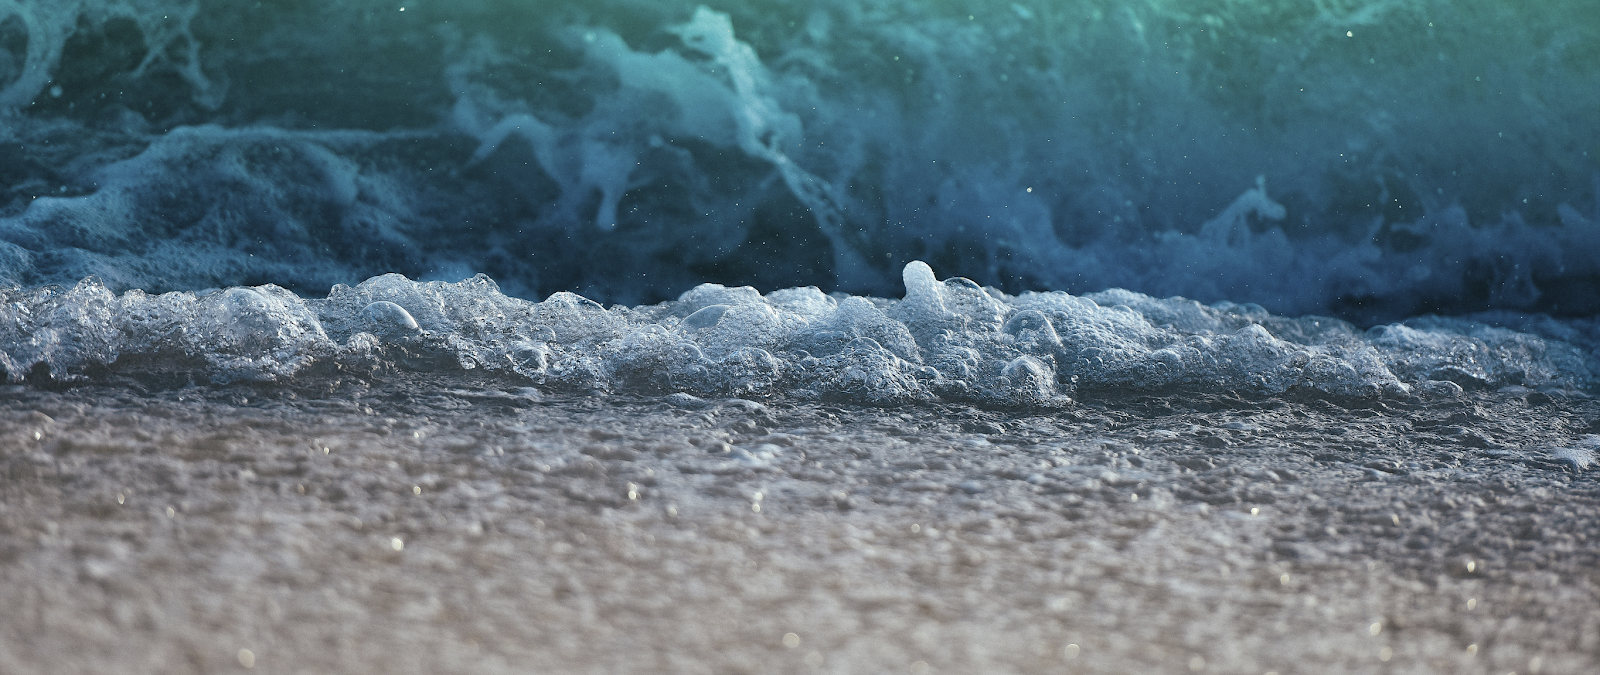 Ultra Wide Desktop Wallpaper - Sea Waves In Maldives , HD Wallpaper & Backgrounds